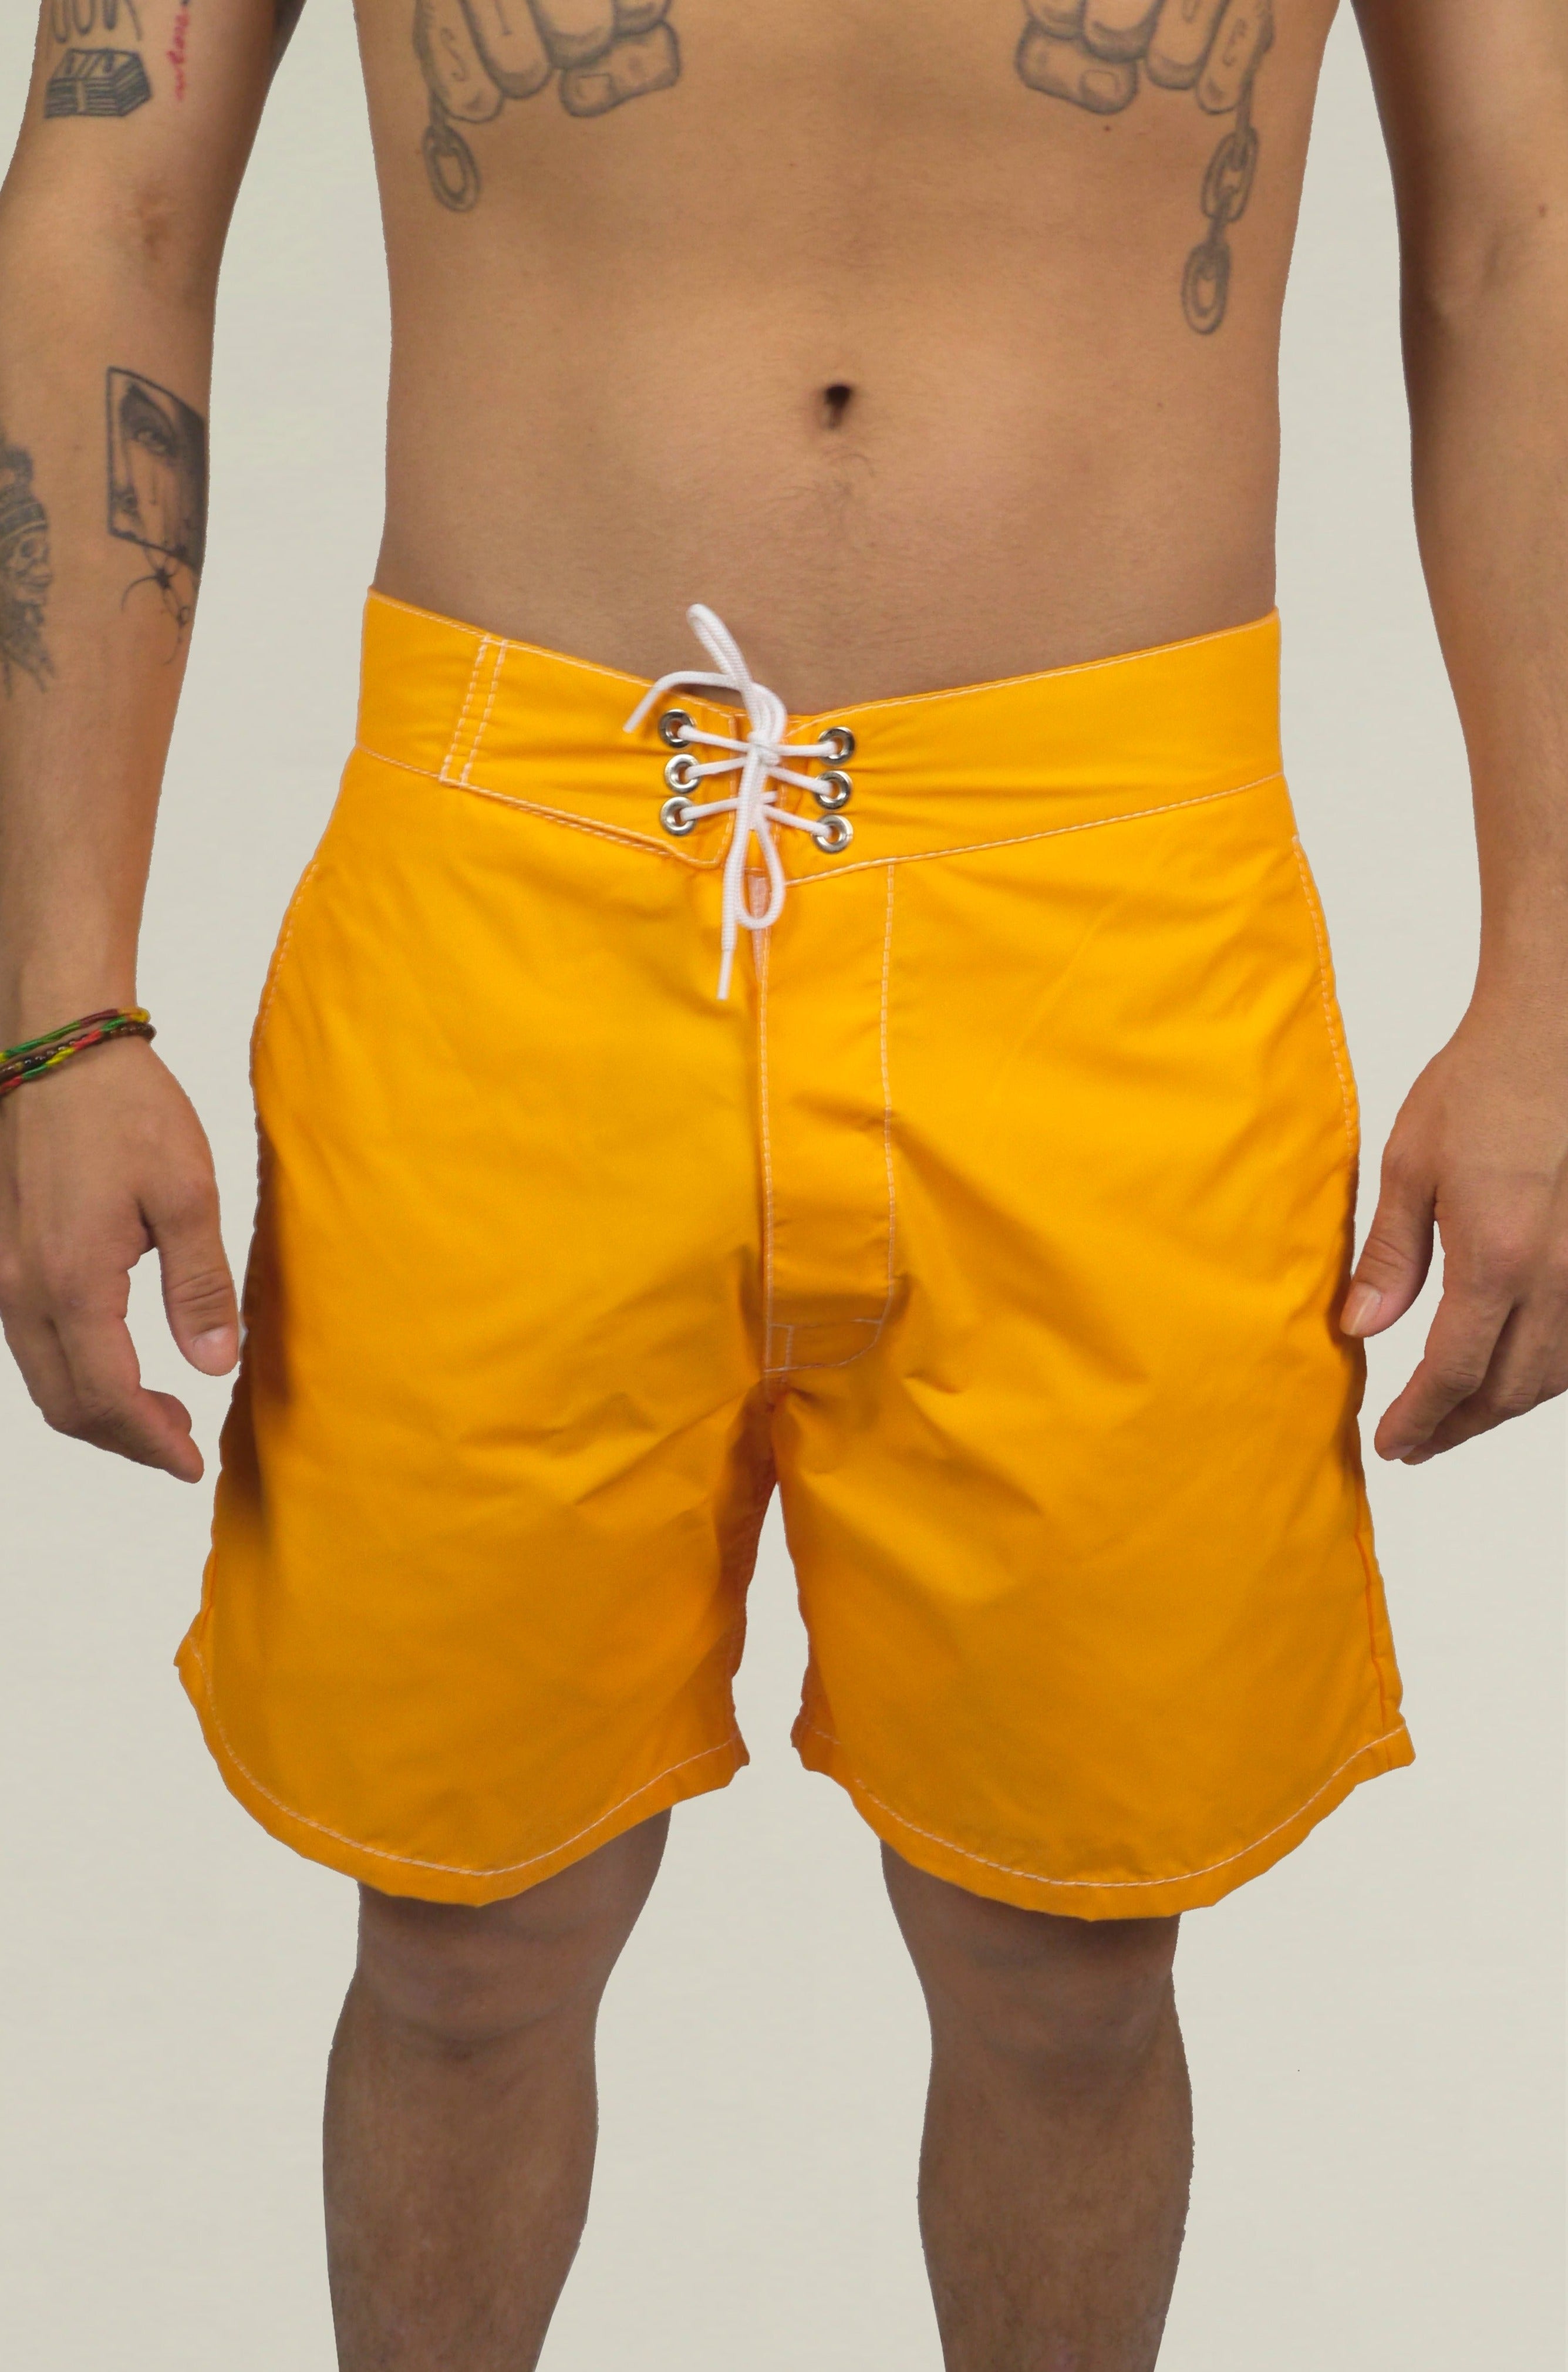 Swimsuit "Trim" - Orange